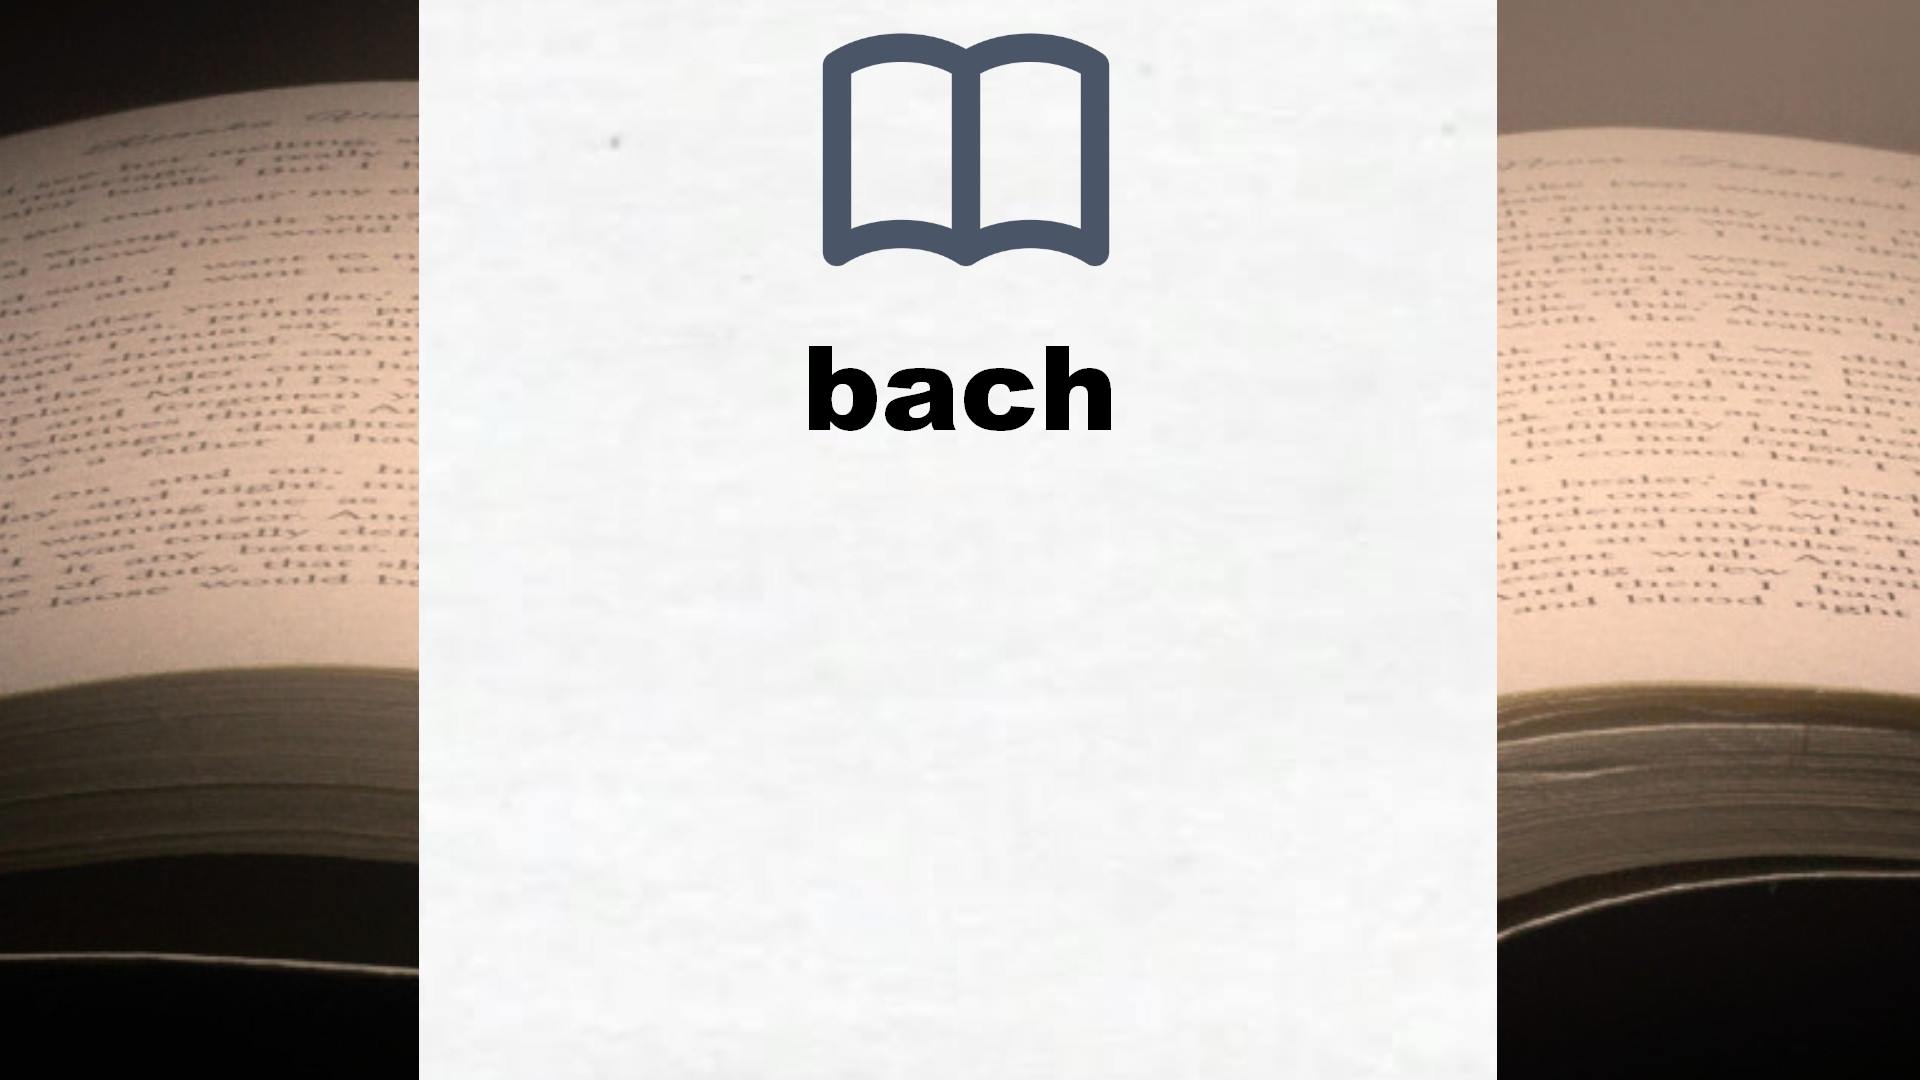 Libros sobre bach